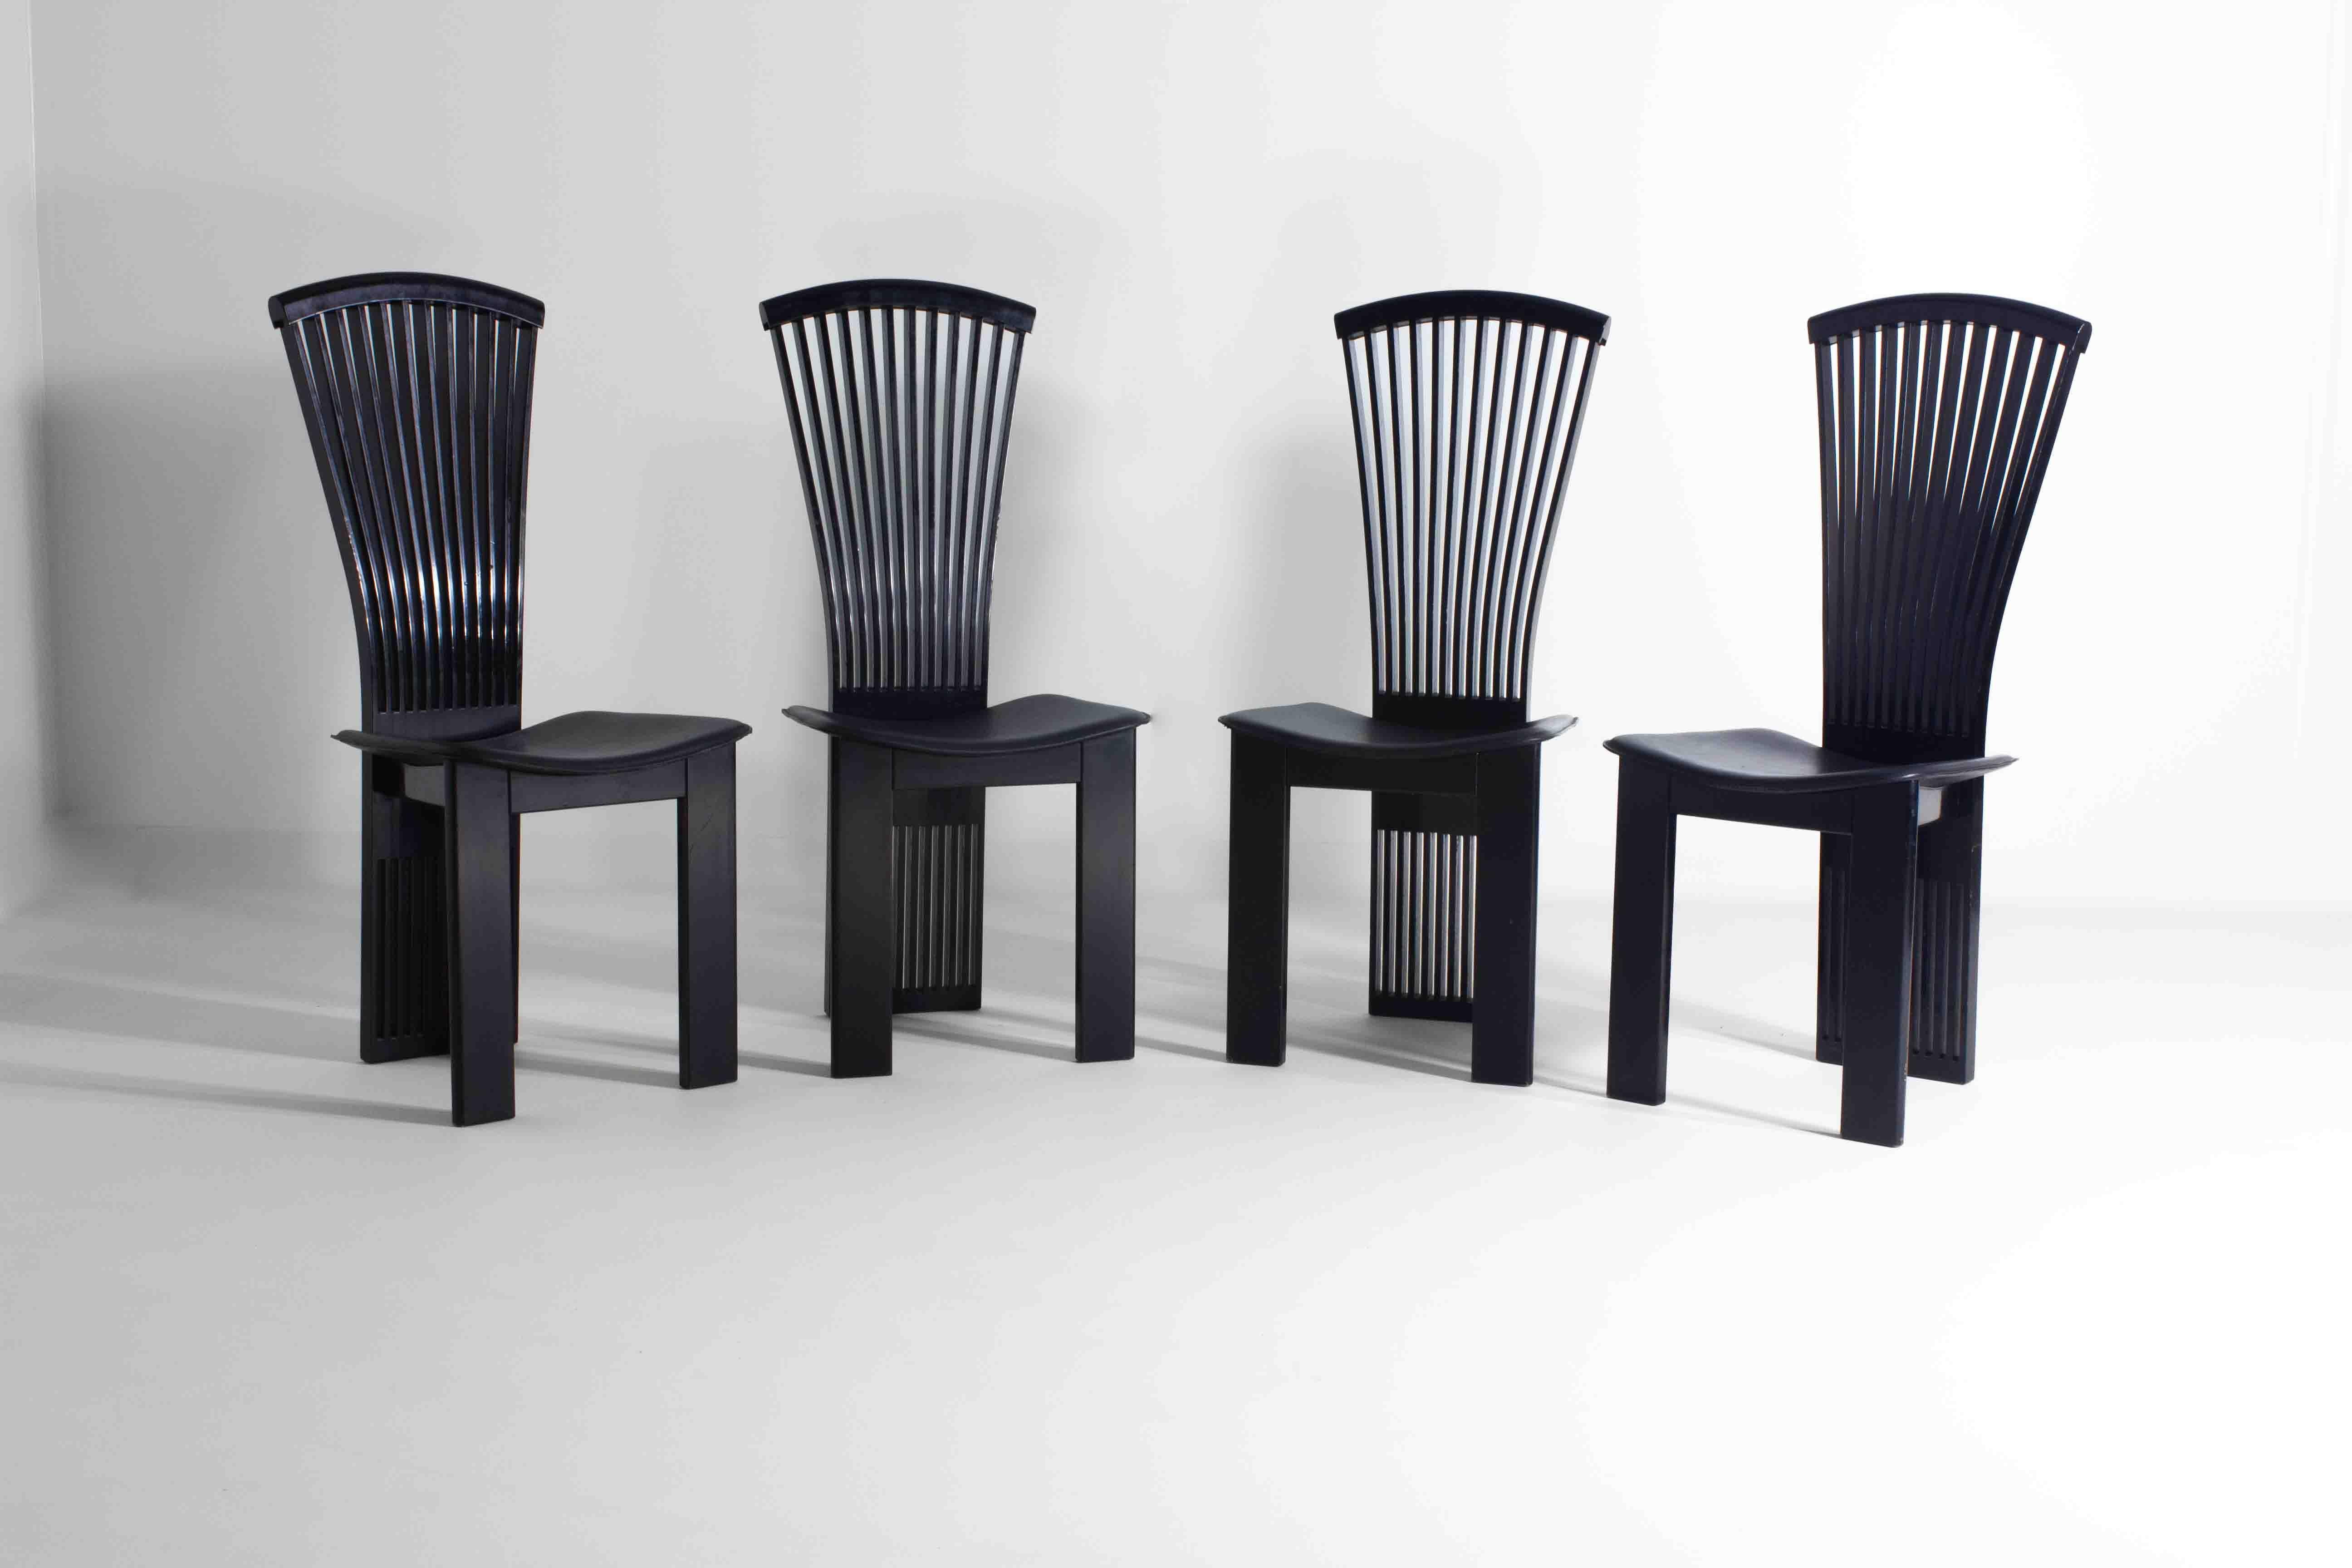 Elegant ensemble de 4 chaises de salle à manger italiennes aux lignes épurées, créé par Pietro Costantini. Ils sont un véritable exemple de la créativité audacieuse du design postmoderne des années 1980. Les chaises présentent une silhouette